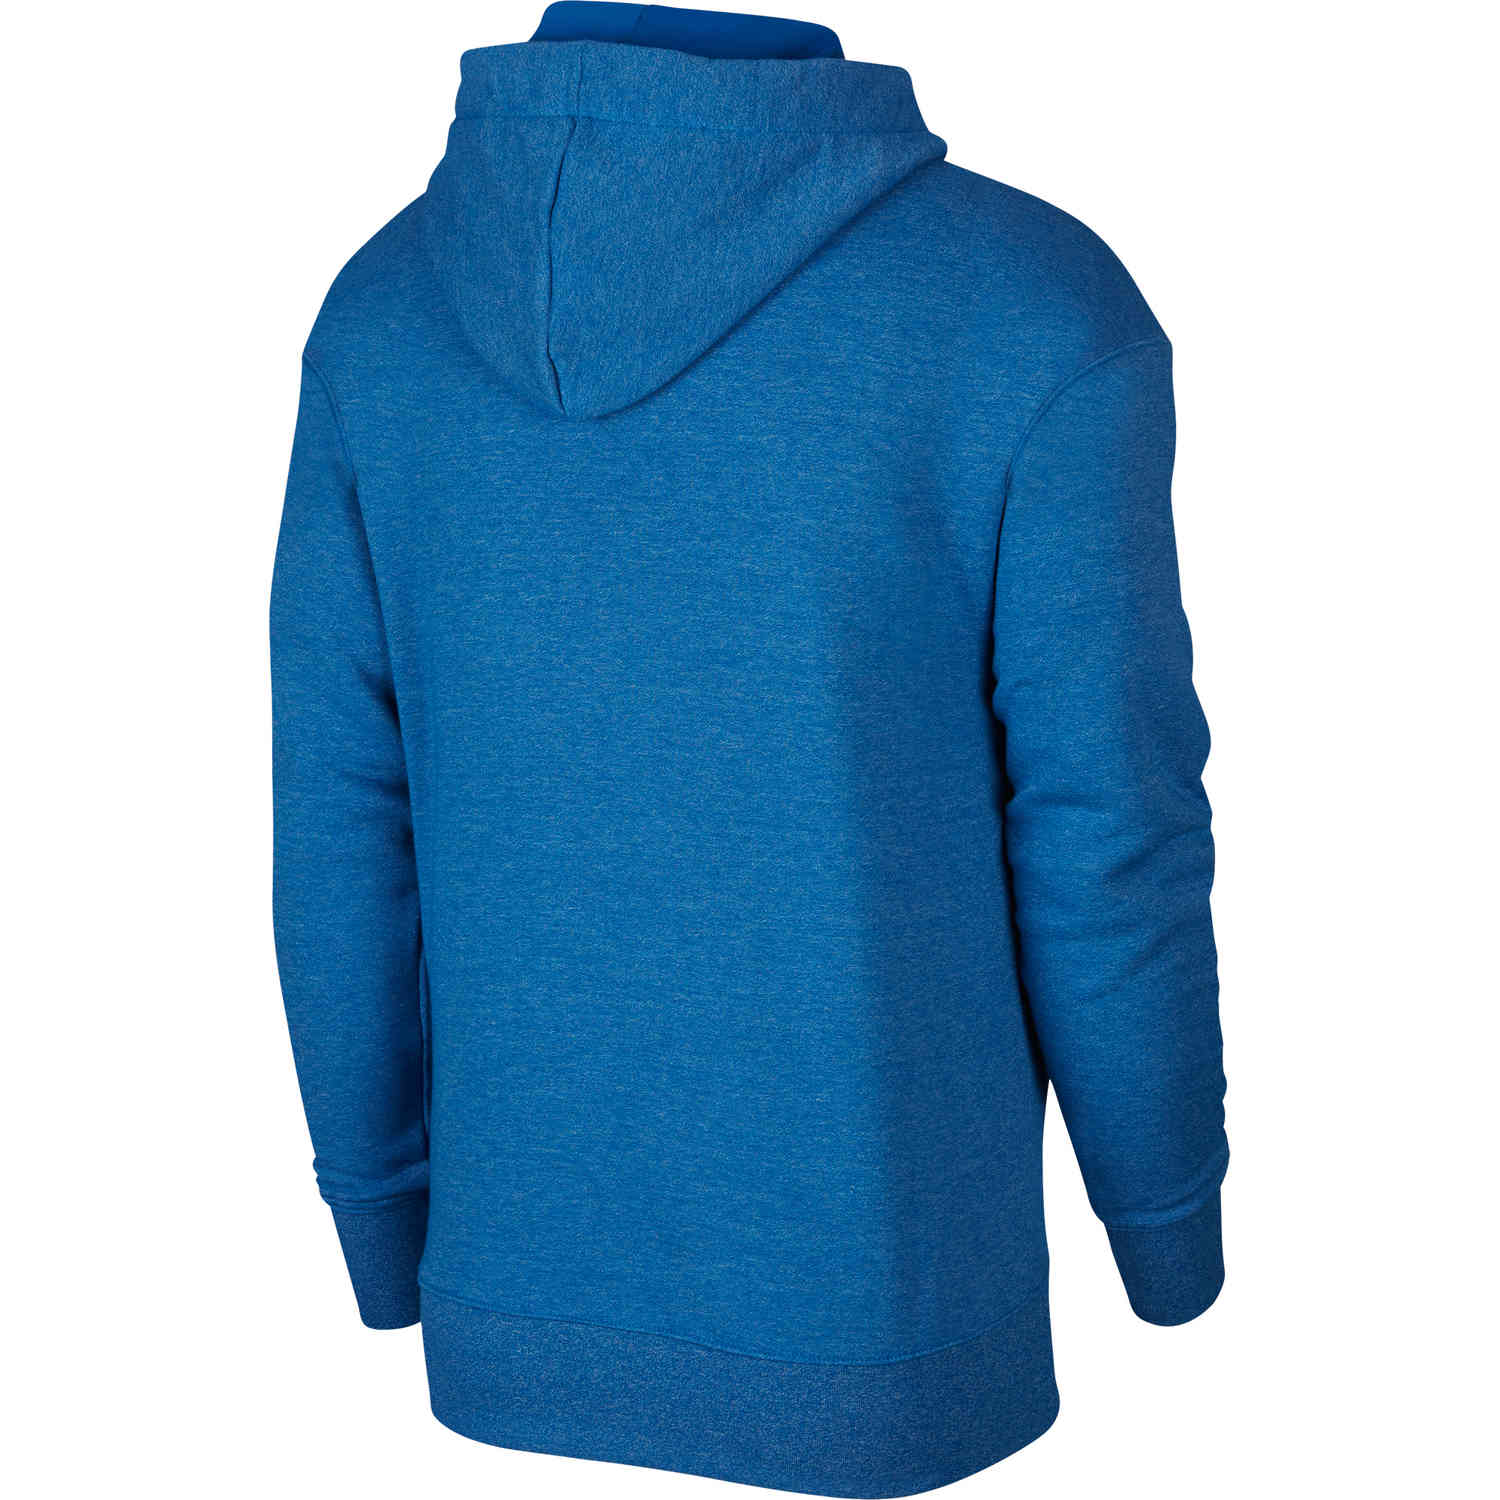 nike blue zip hoodie